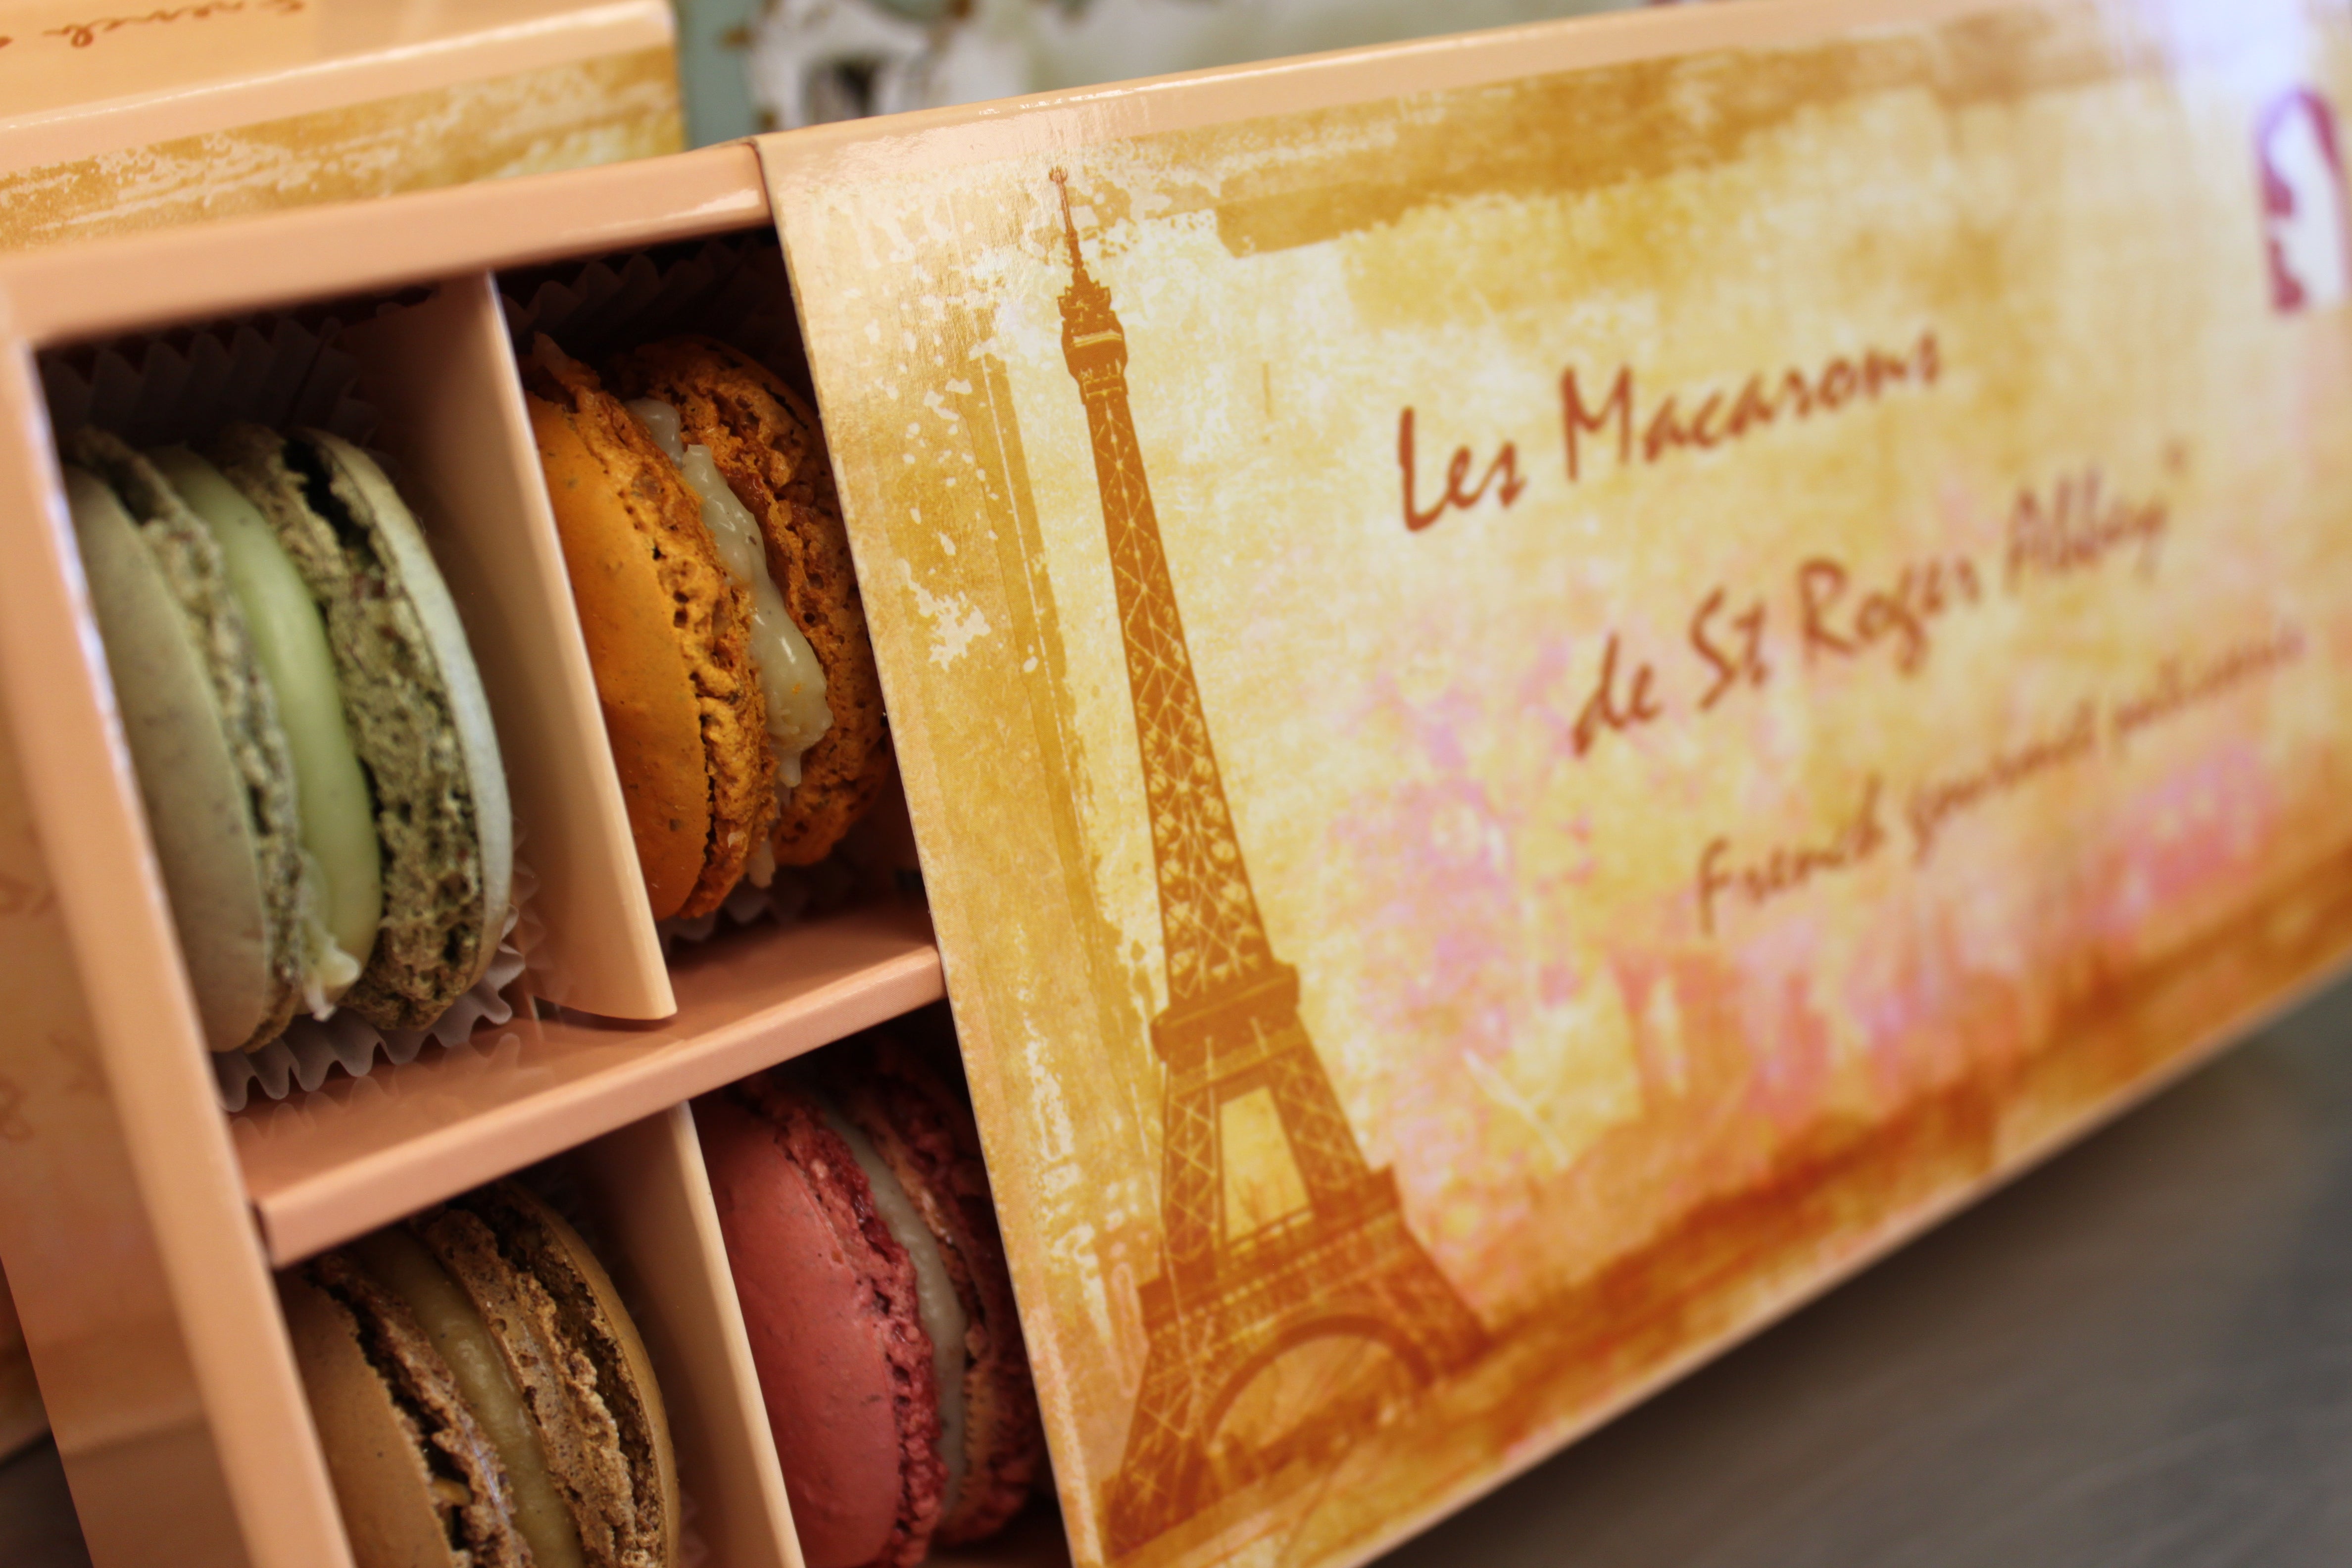 Organic Paris Tour Eiffel 12-French Macaron Assortment